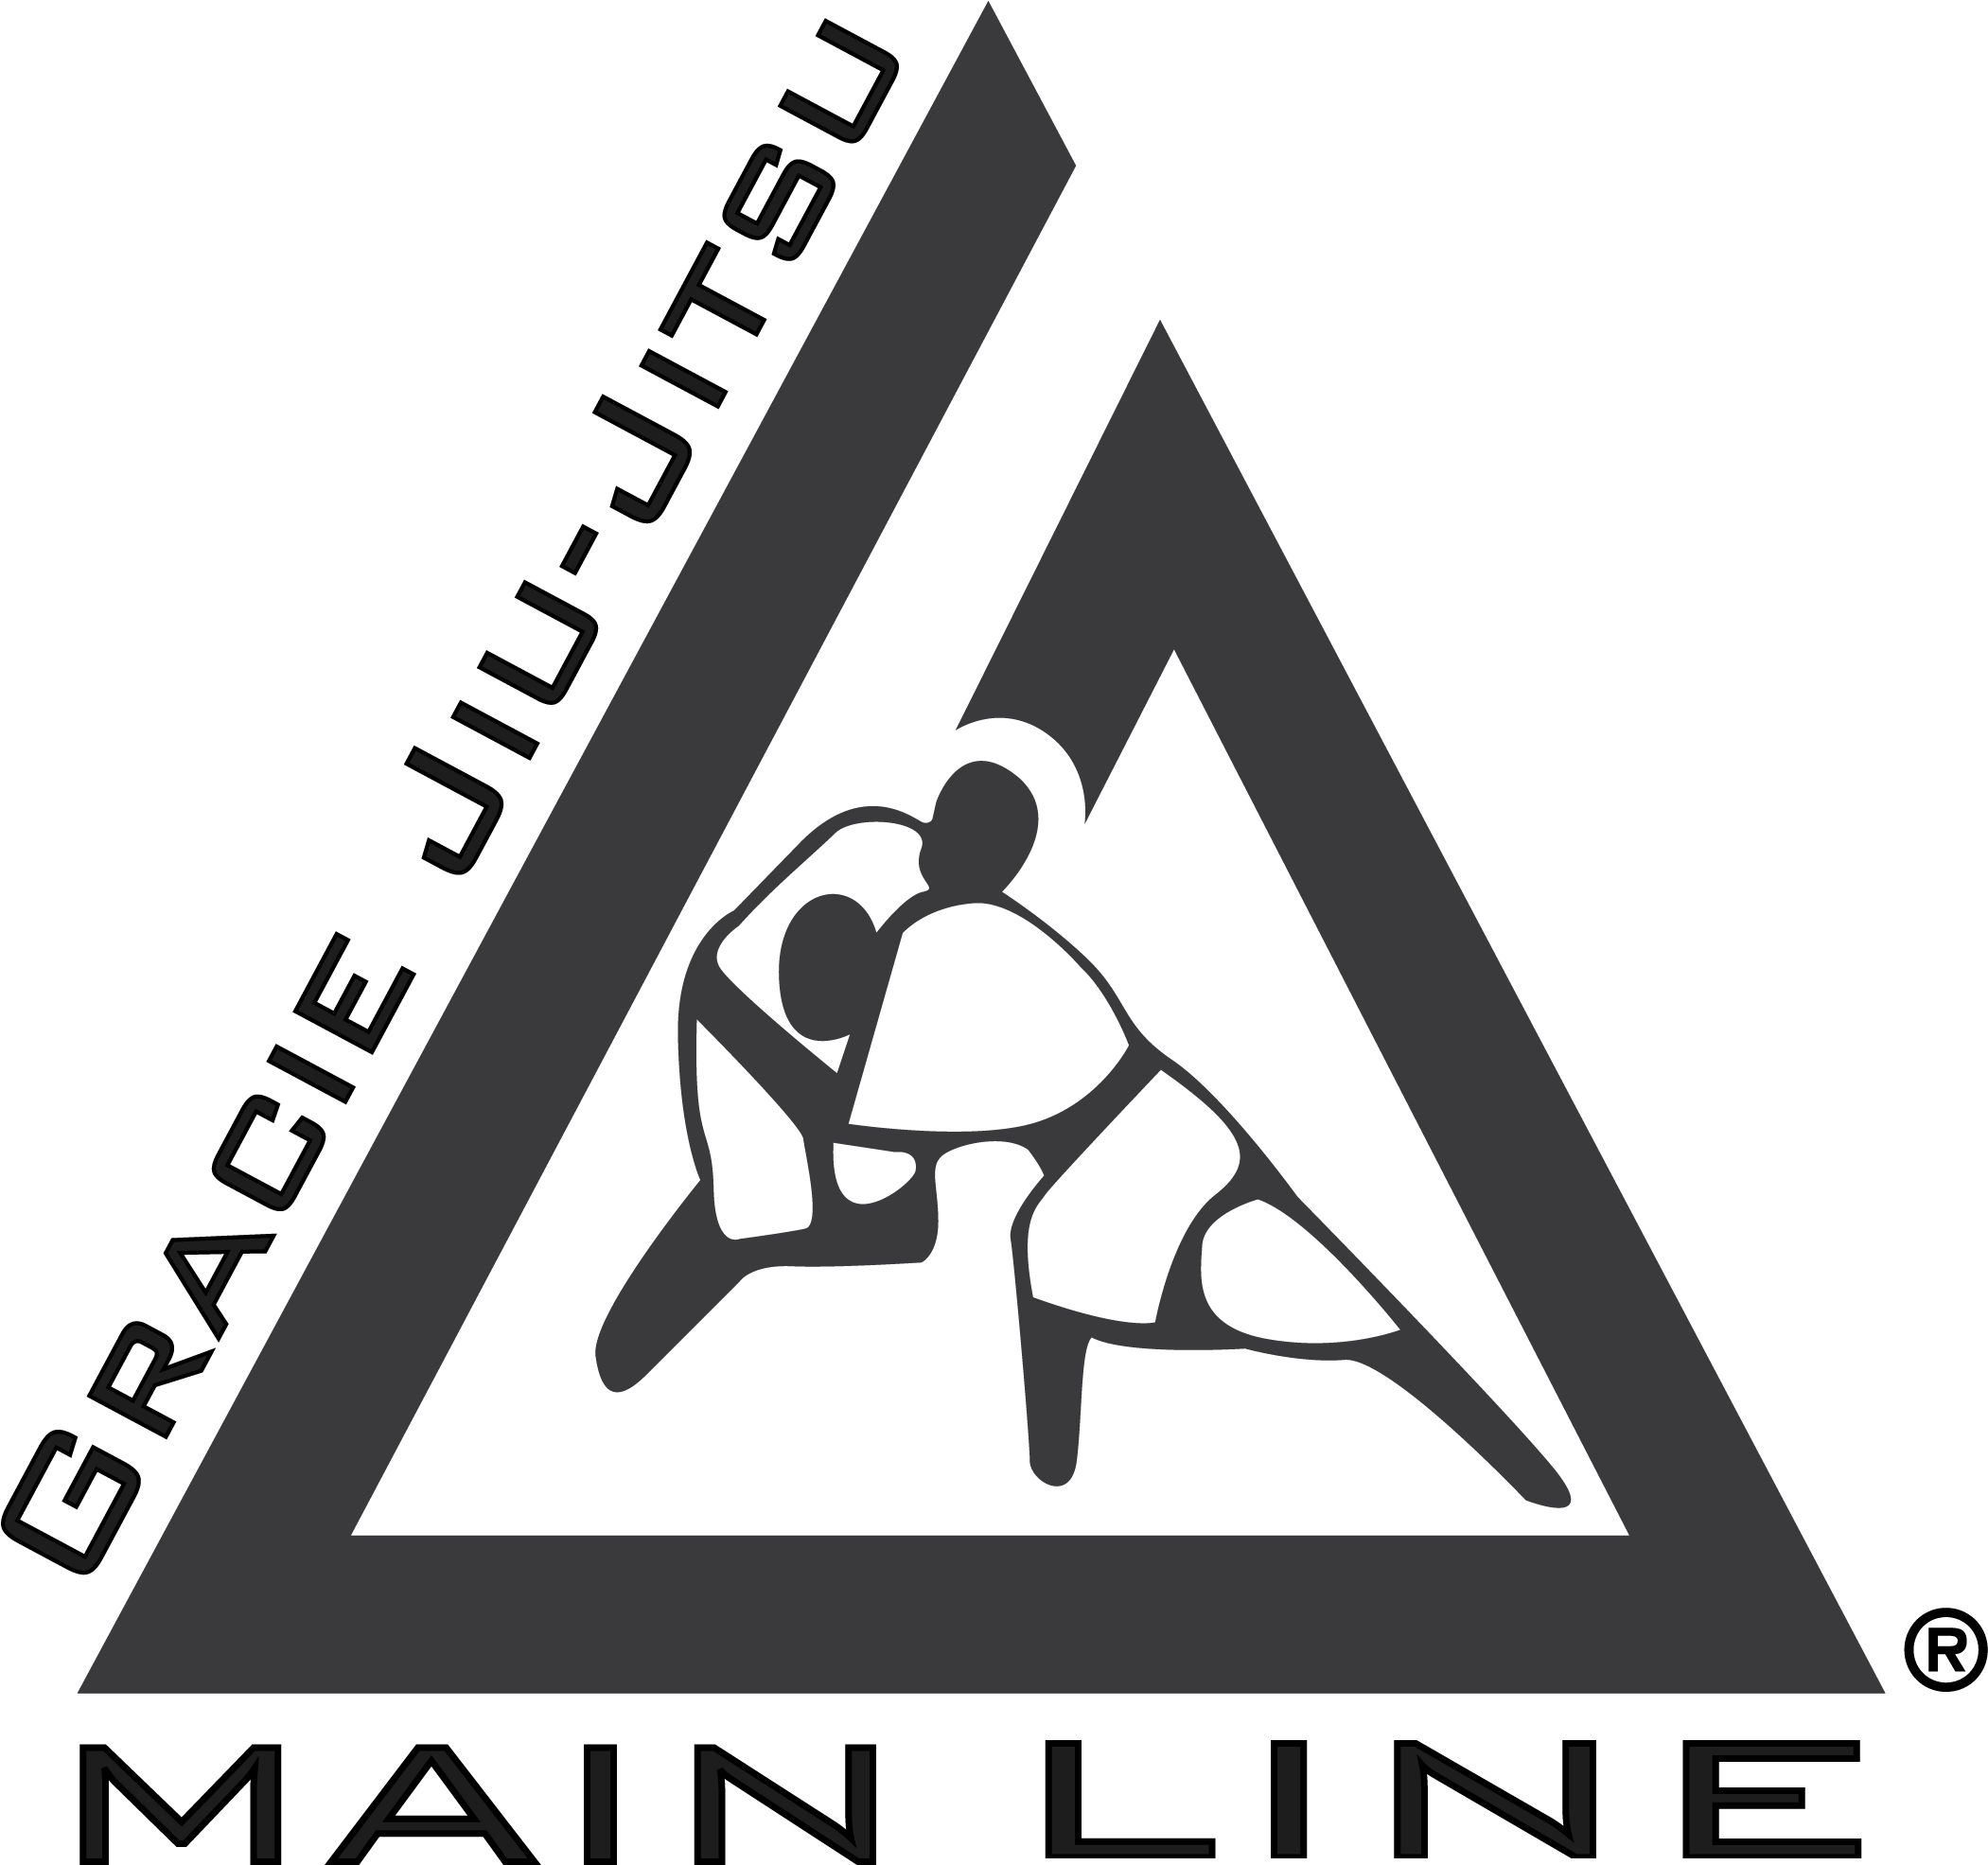 A Logo Of A Martial Arts Club